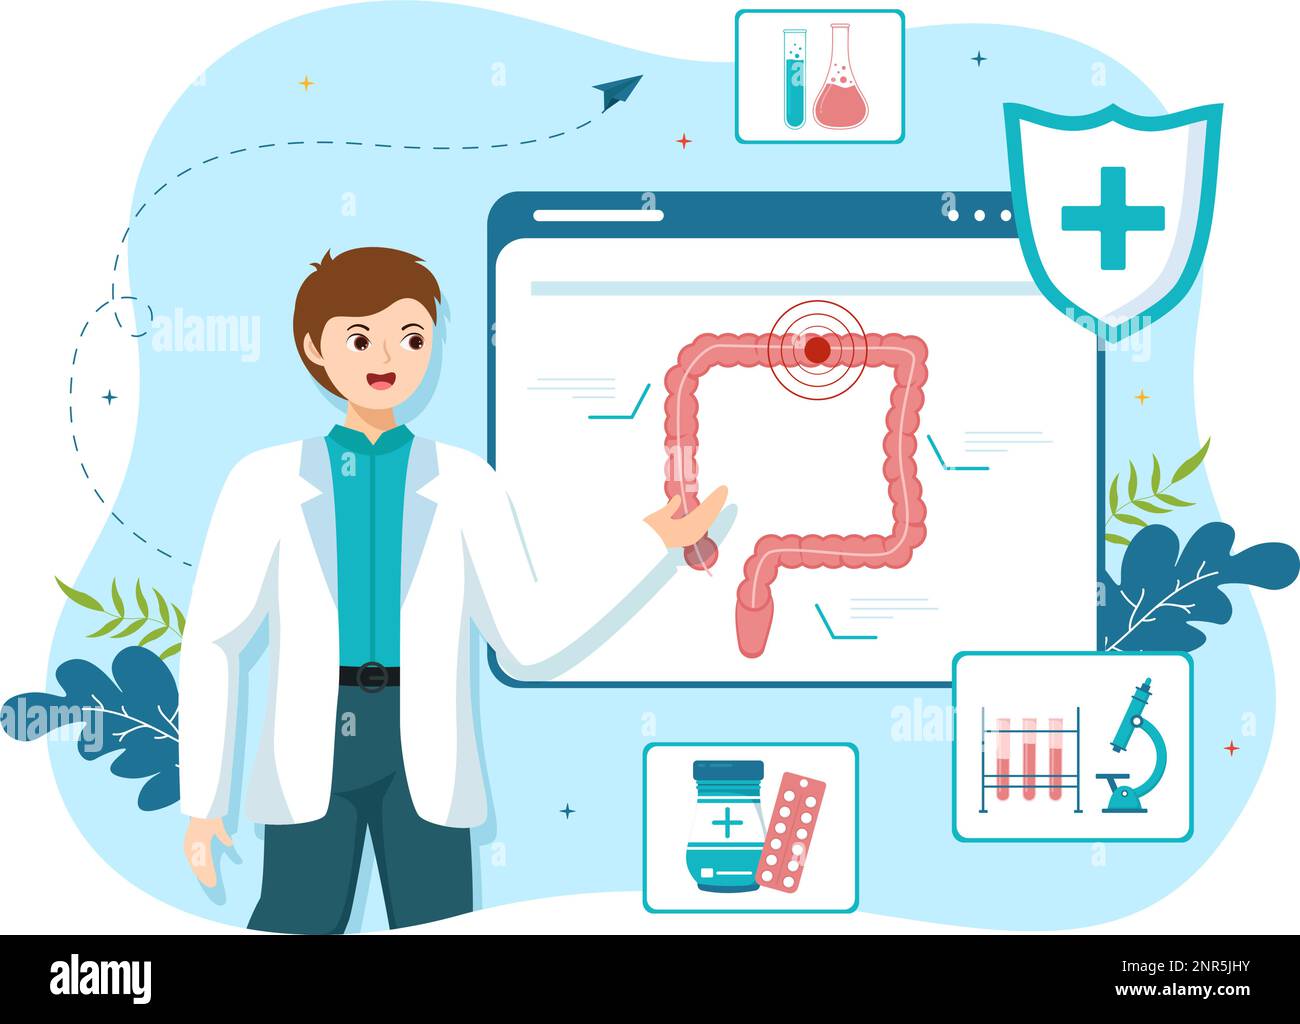 Proctologo o Colonoscopia Illustrazione con un medico esamina del Colon e batteri nocivi in Cartoon mano disegnato per Landing Page Templates Illustrazione Vettoriale